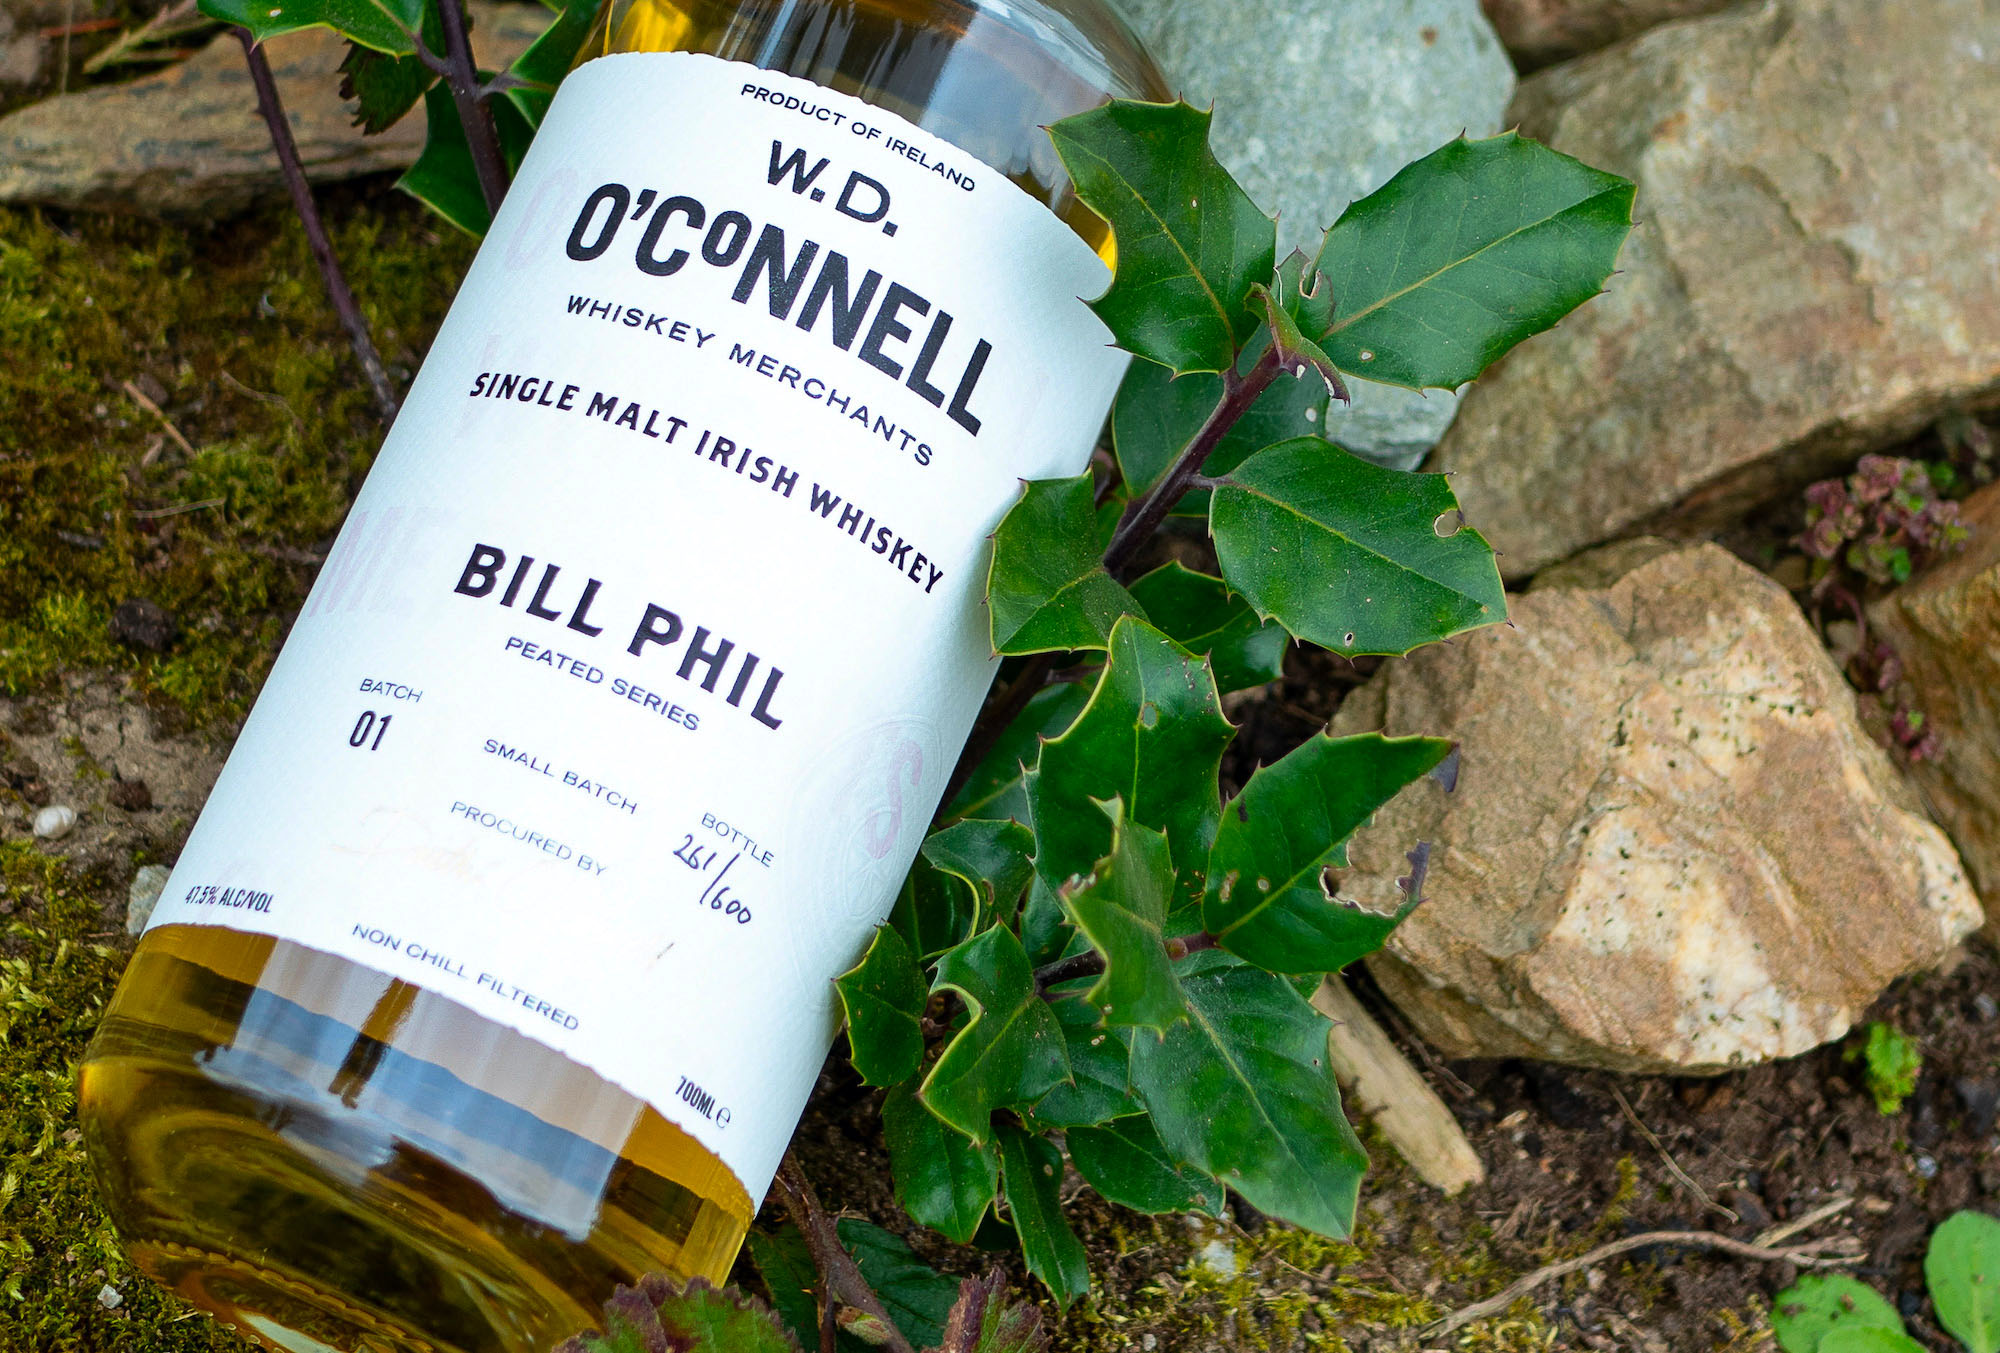 Bill Phil, peated Irish whiskey